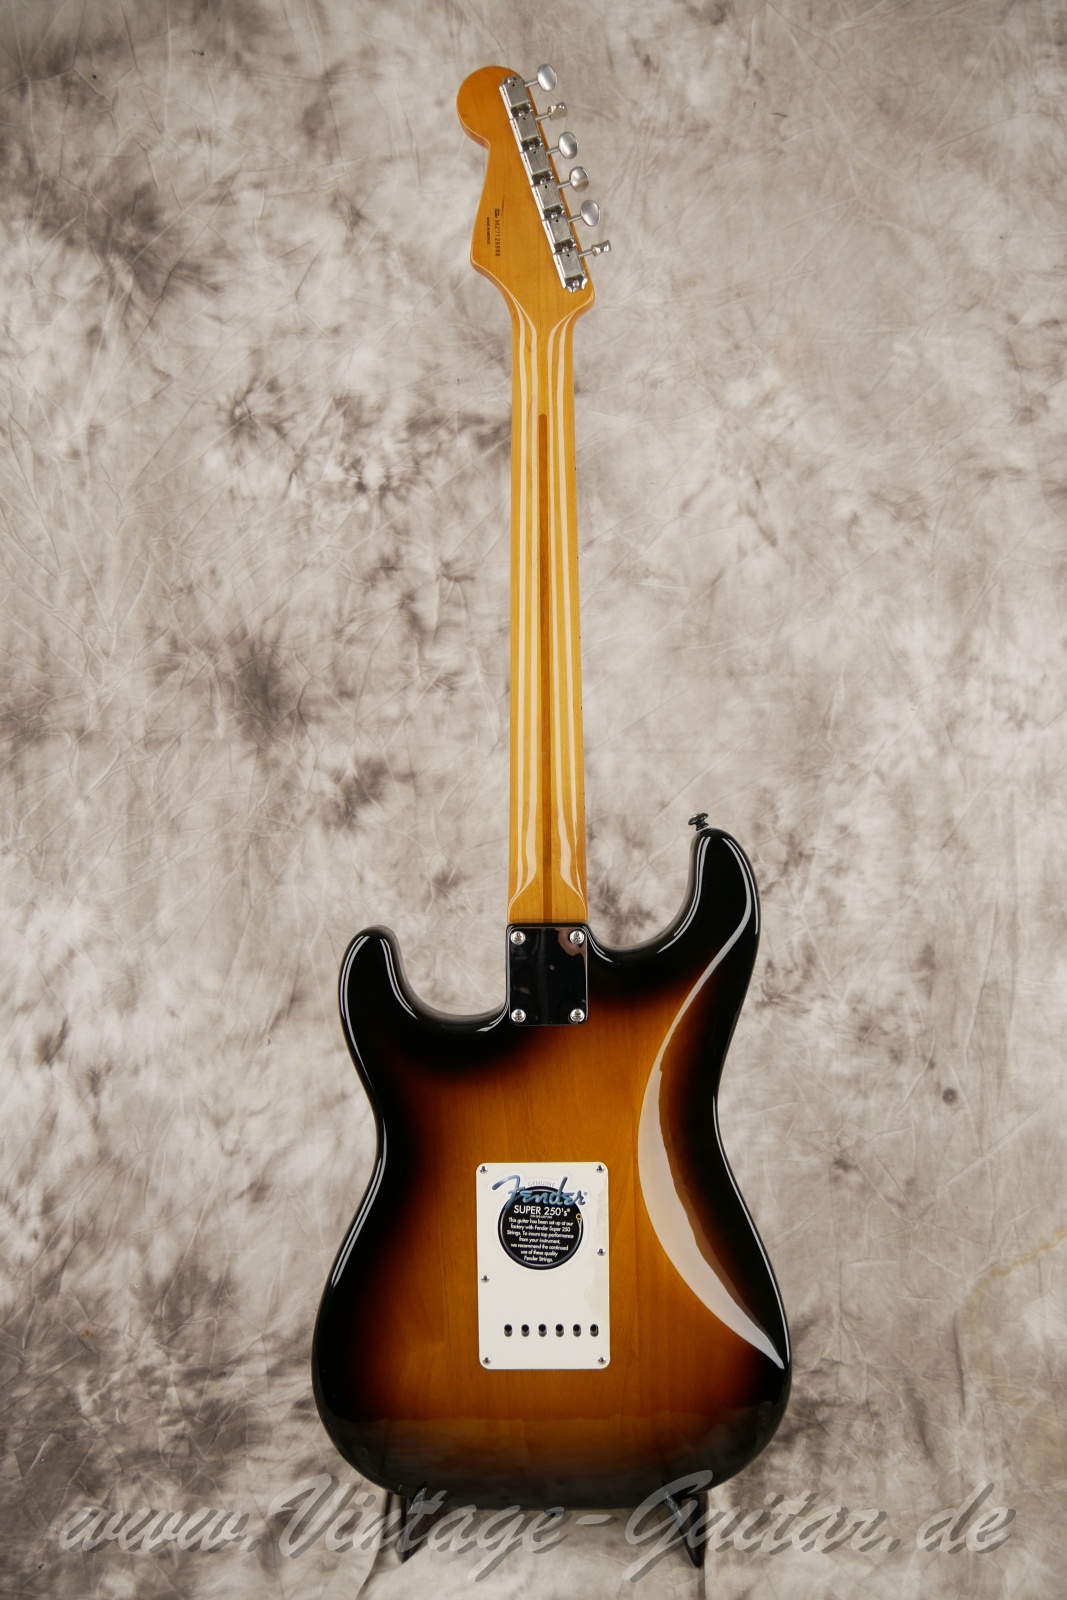 Fener-Stratocaster-Classic-player-series-50s-2007-sunburst-002.jpg